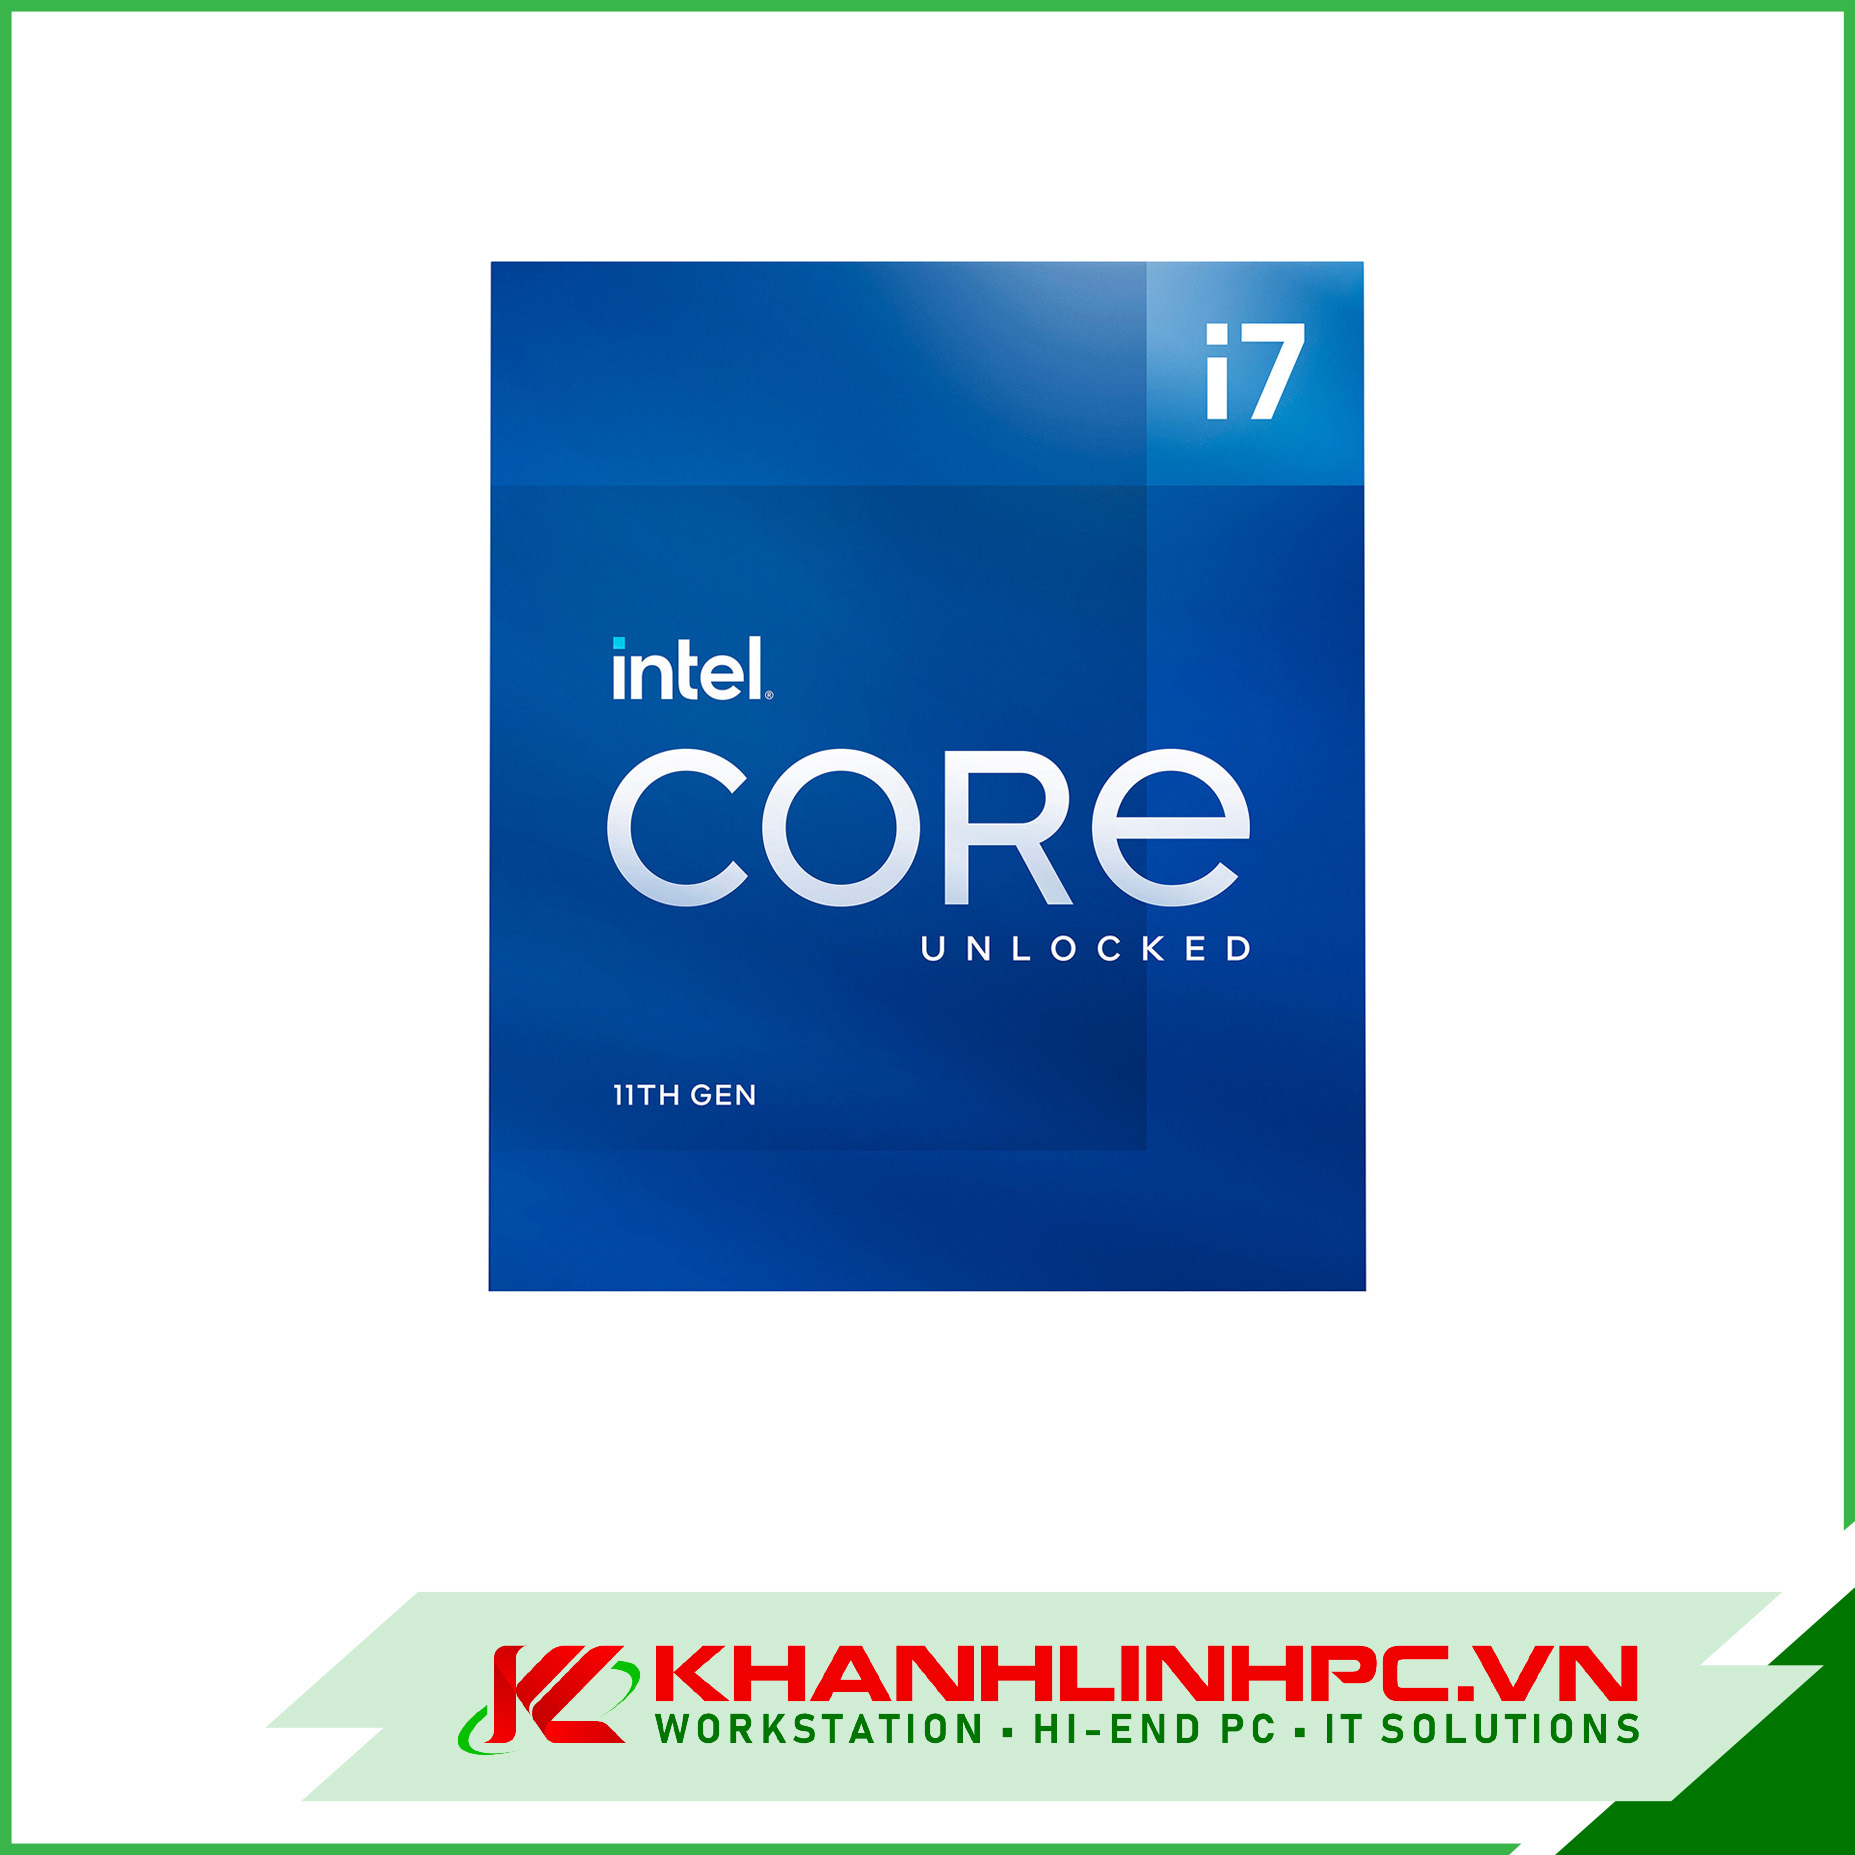 CPU Intel Core i7-11700K (3.6GHz Turbo 5GHz, 8 Nhân 16 Luồng, 16MB Cache, 125W) - Socket Intel LGA 1200 (Box Nhập Khầu)